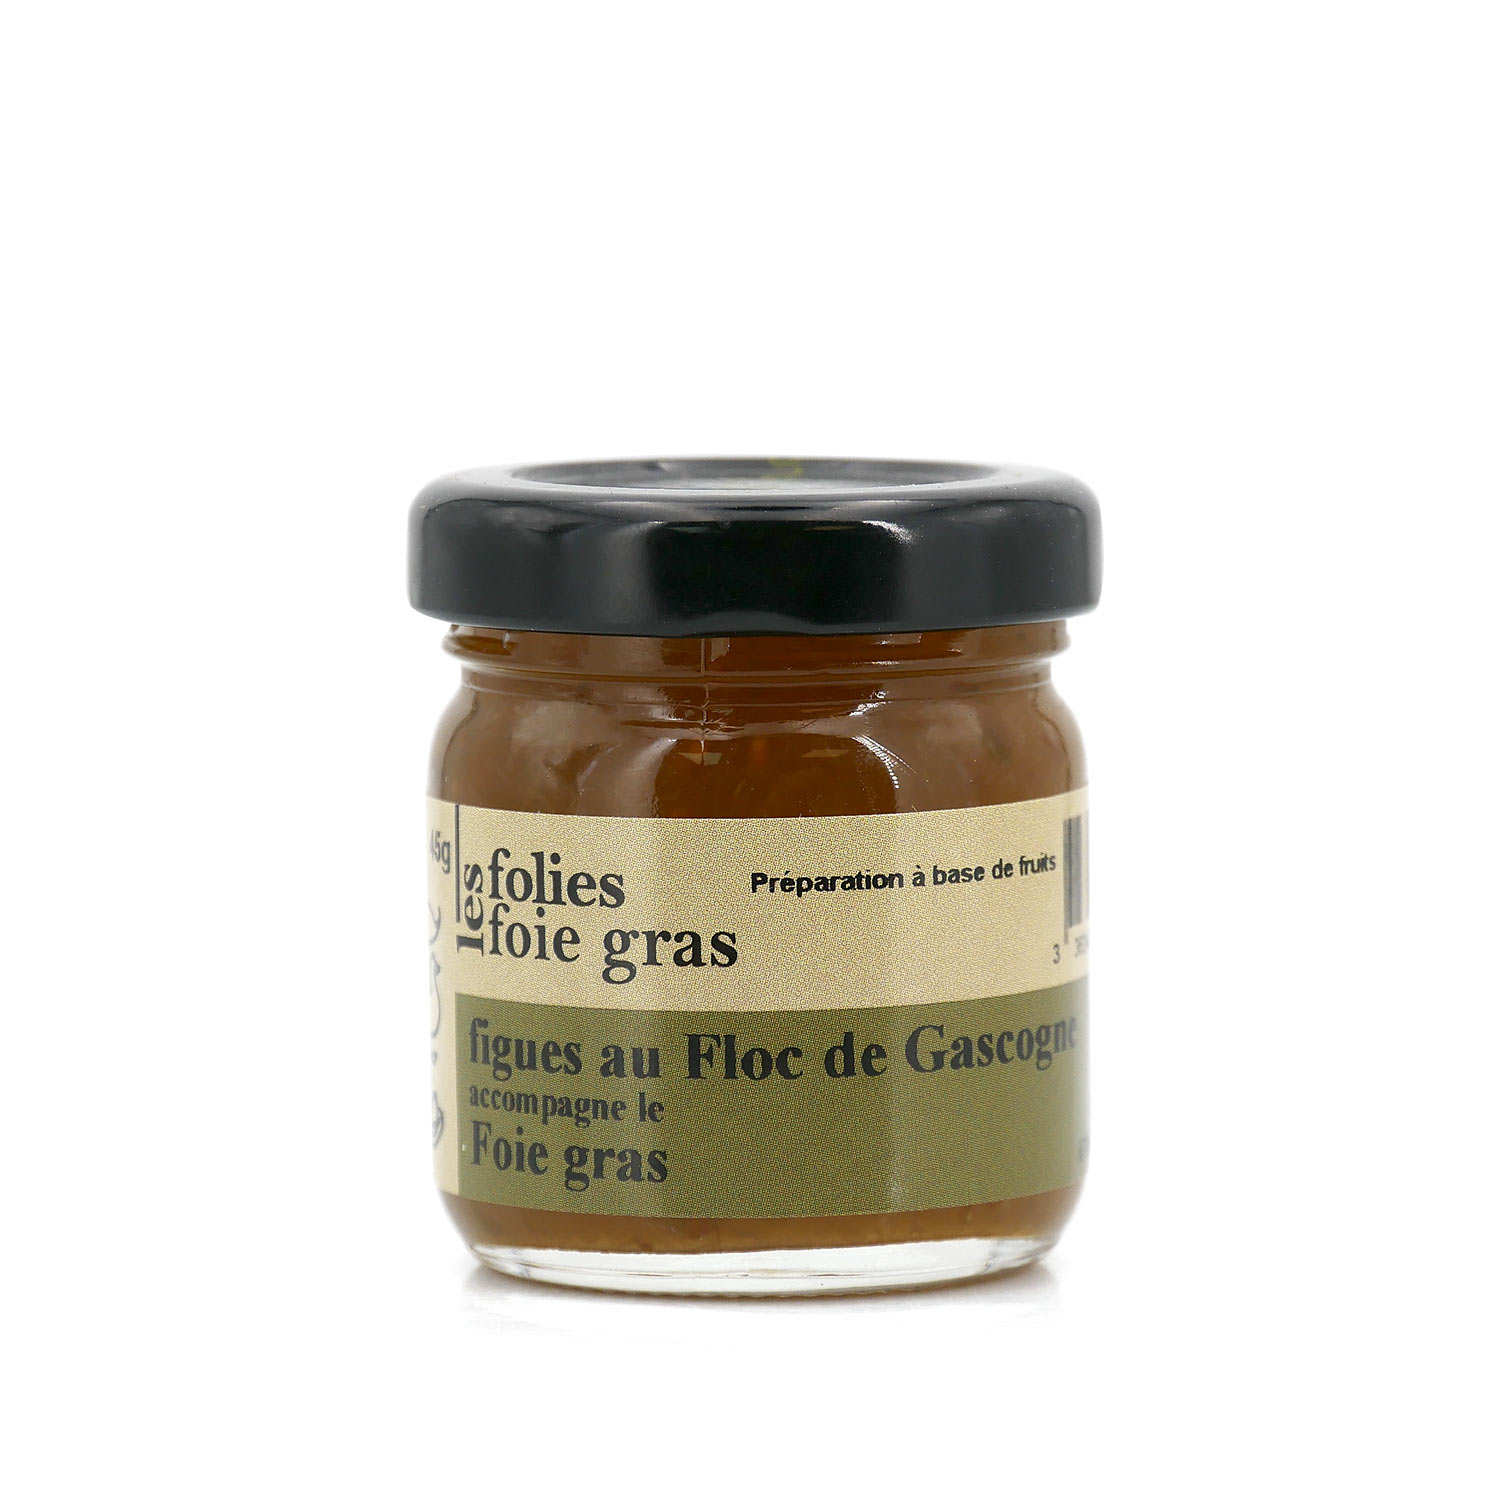 Confit de figues, Accompagnement foie gras, Spécialité Sud Ouest